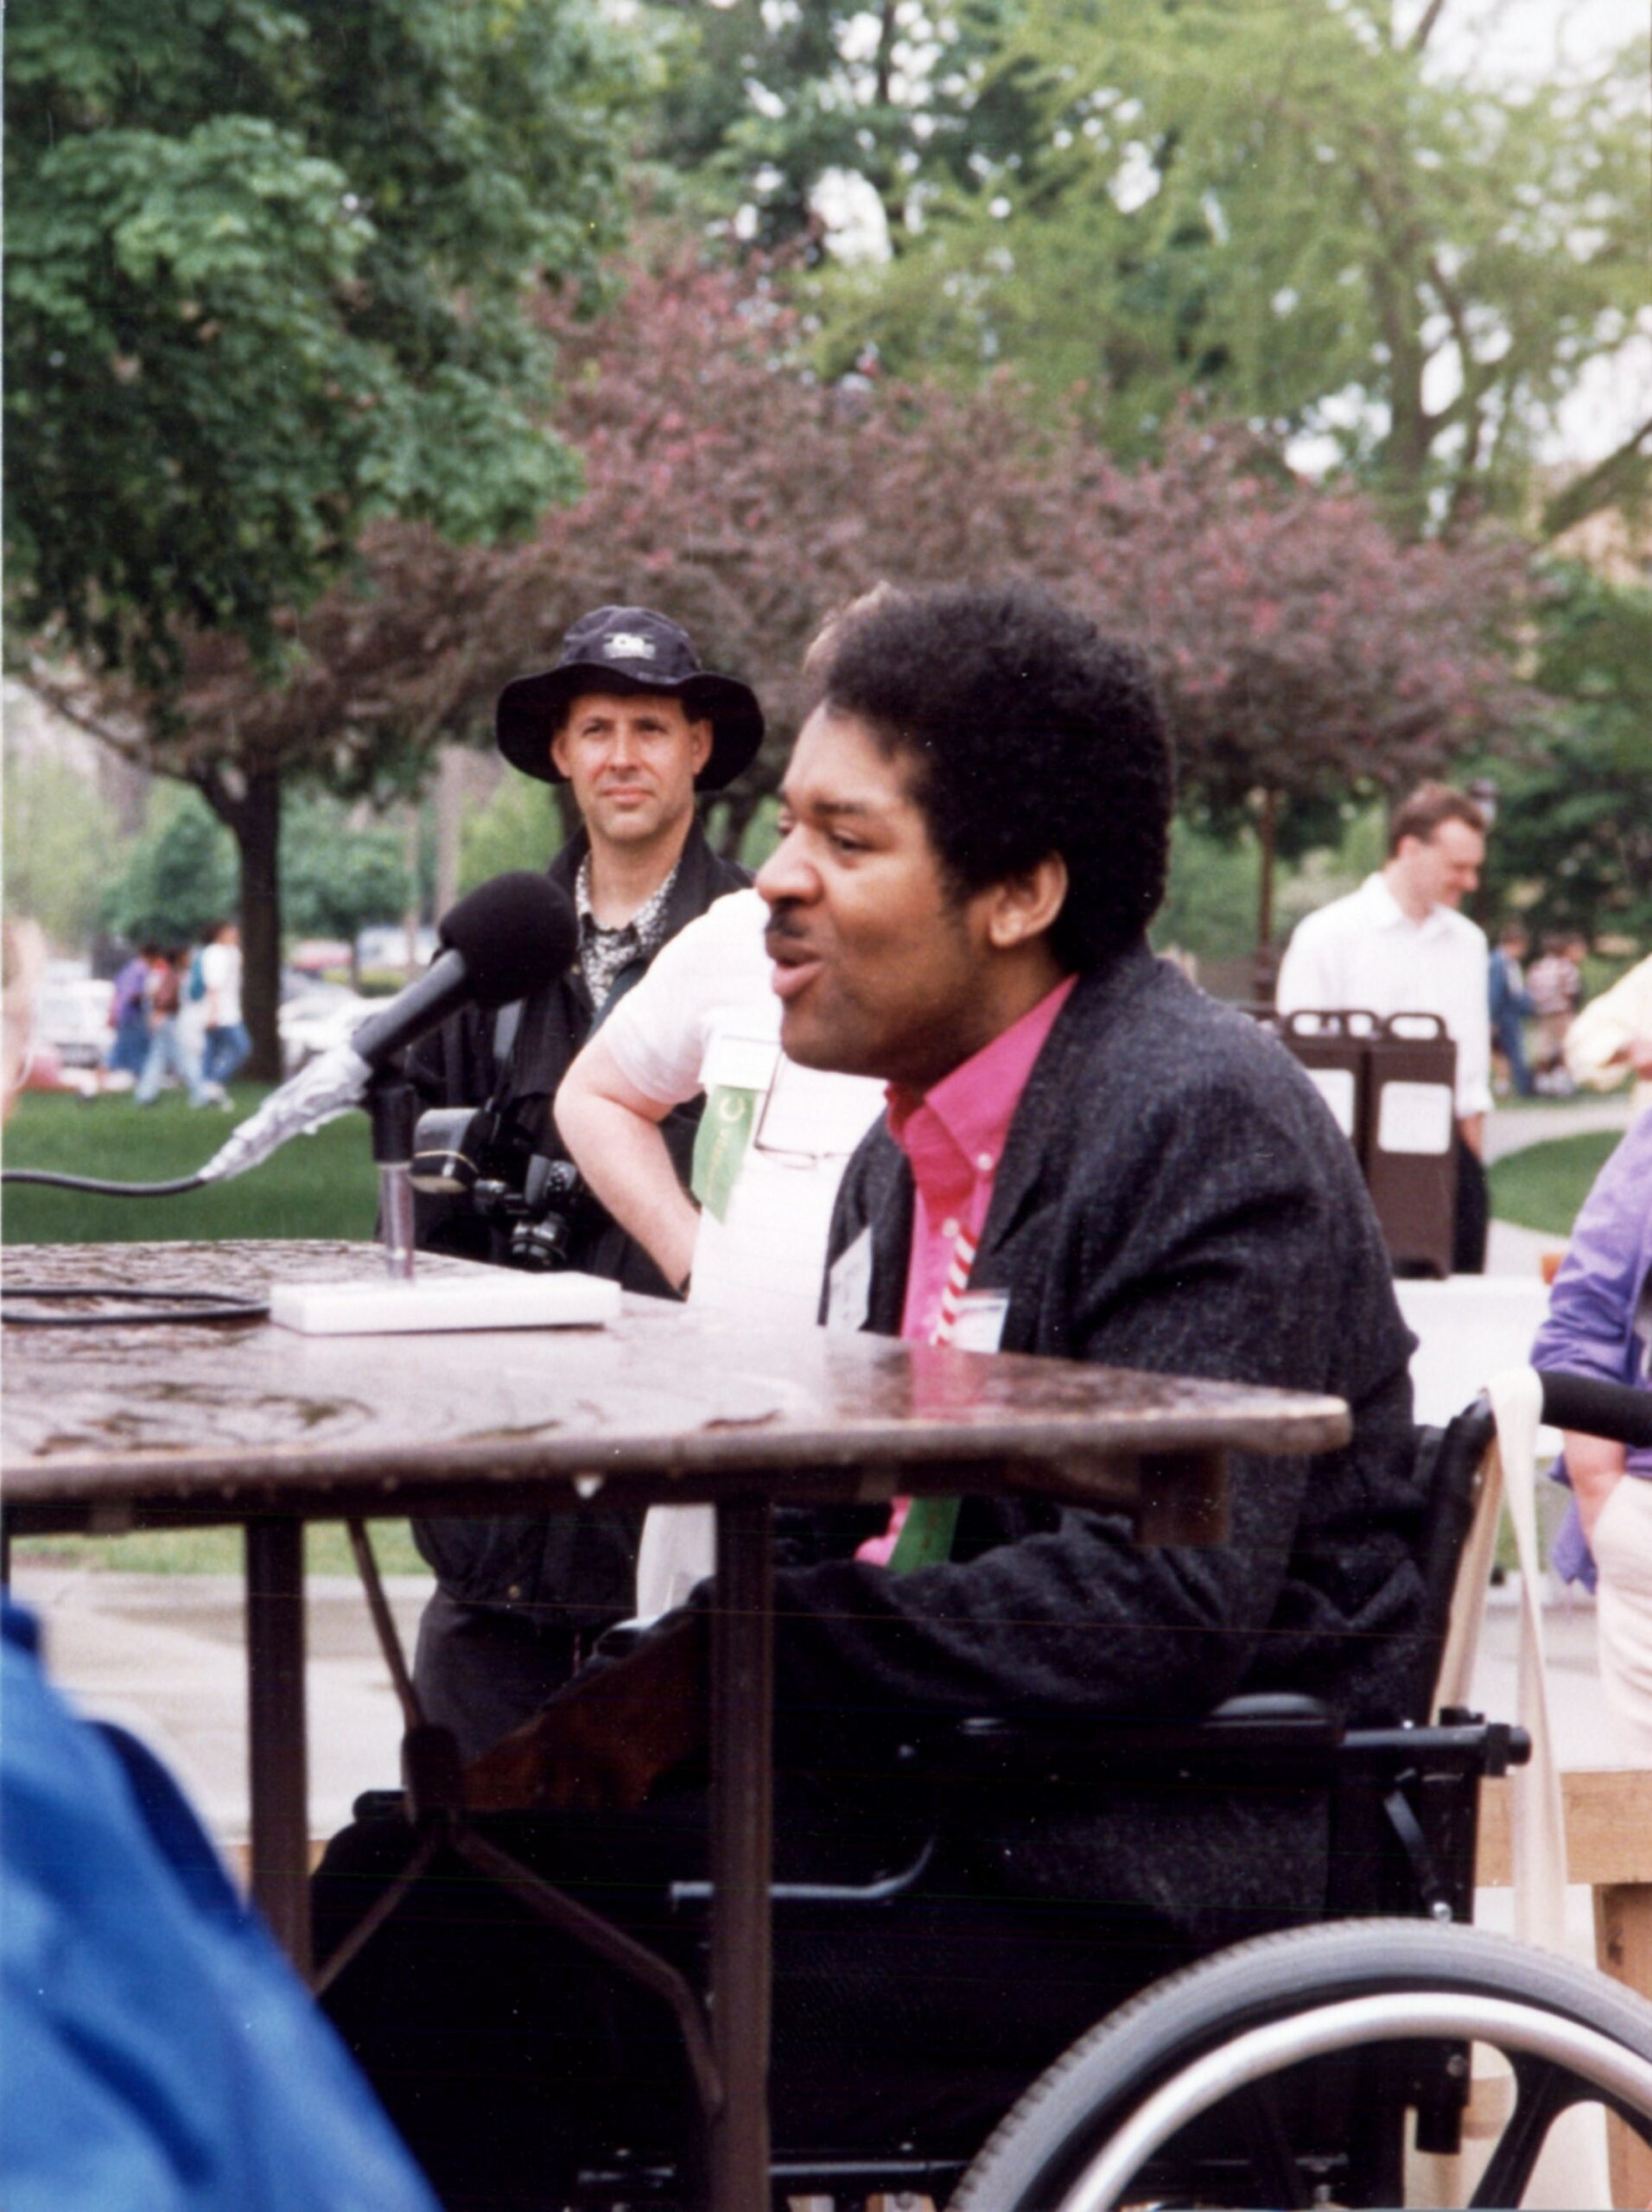 Al Swain at a picnic table